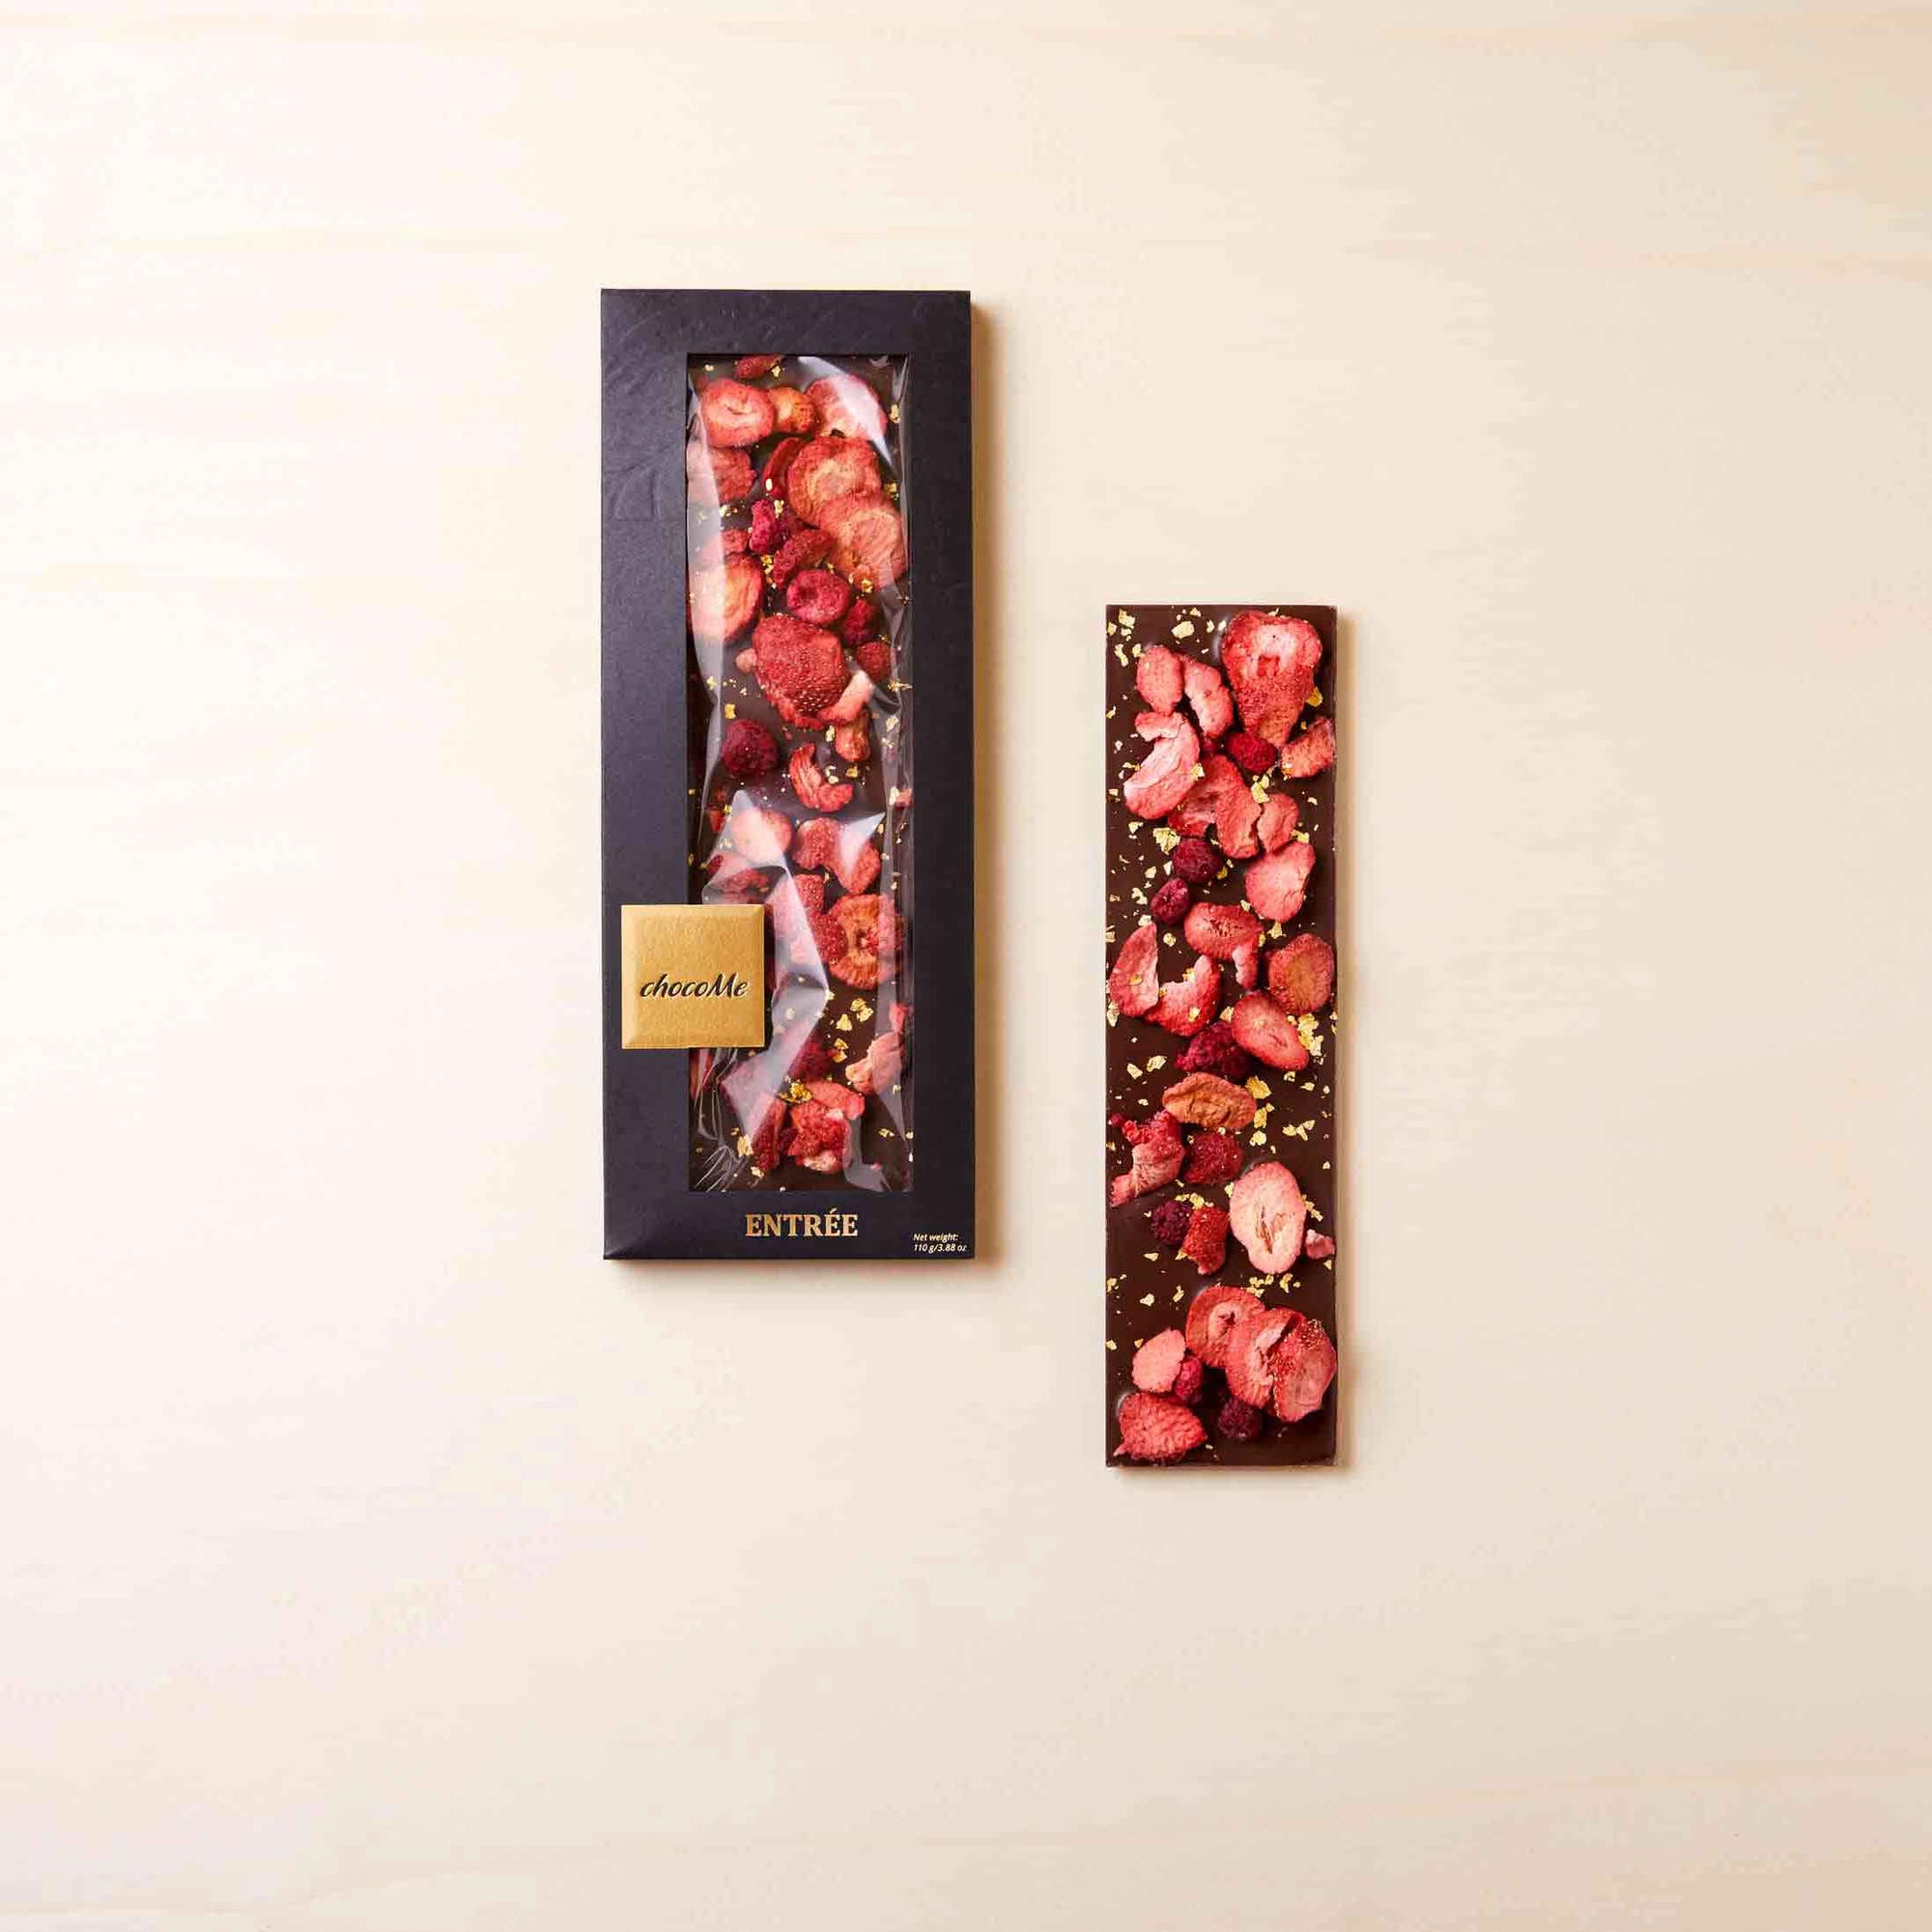 Schokoladentafel mit Erdbeeren, Himbeeren und essbaren Gold, eine Tafel in der dunklen Verpackung und eine ausgepackte Tafel liegt daneben.